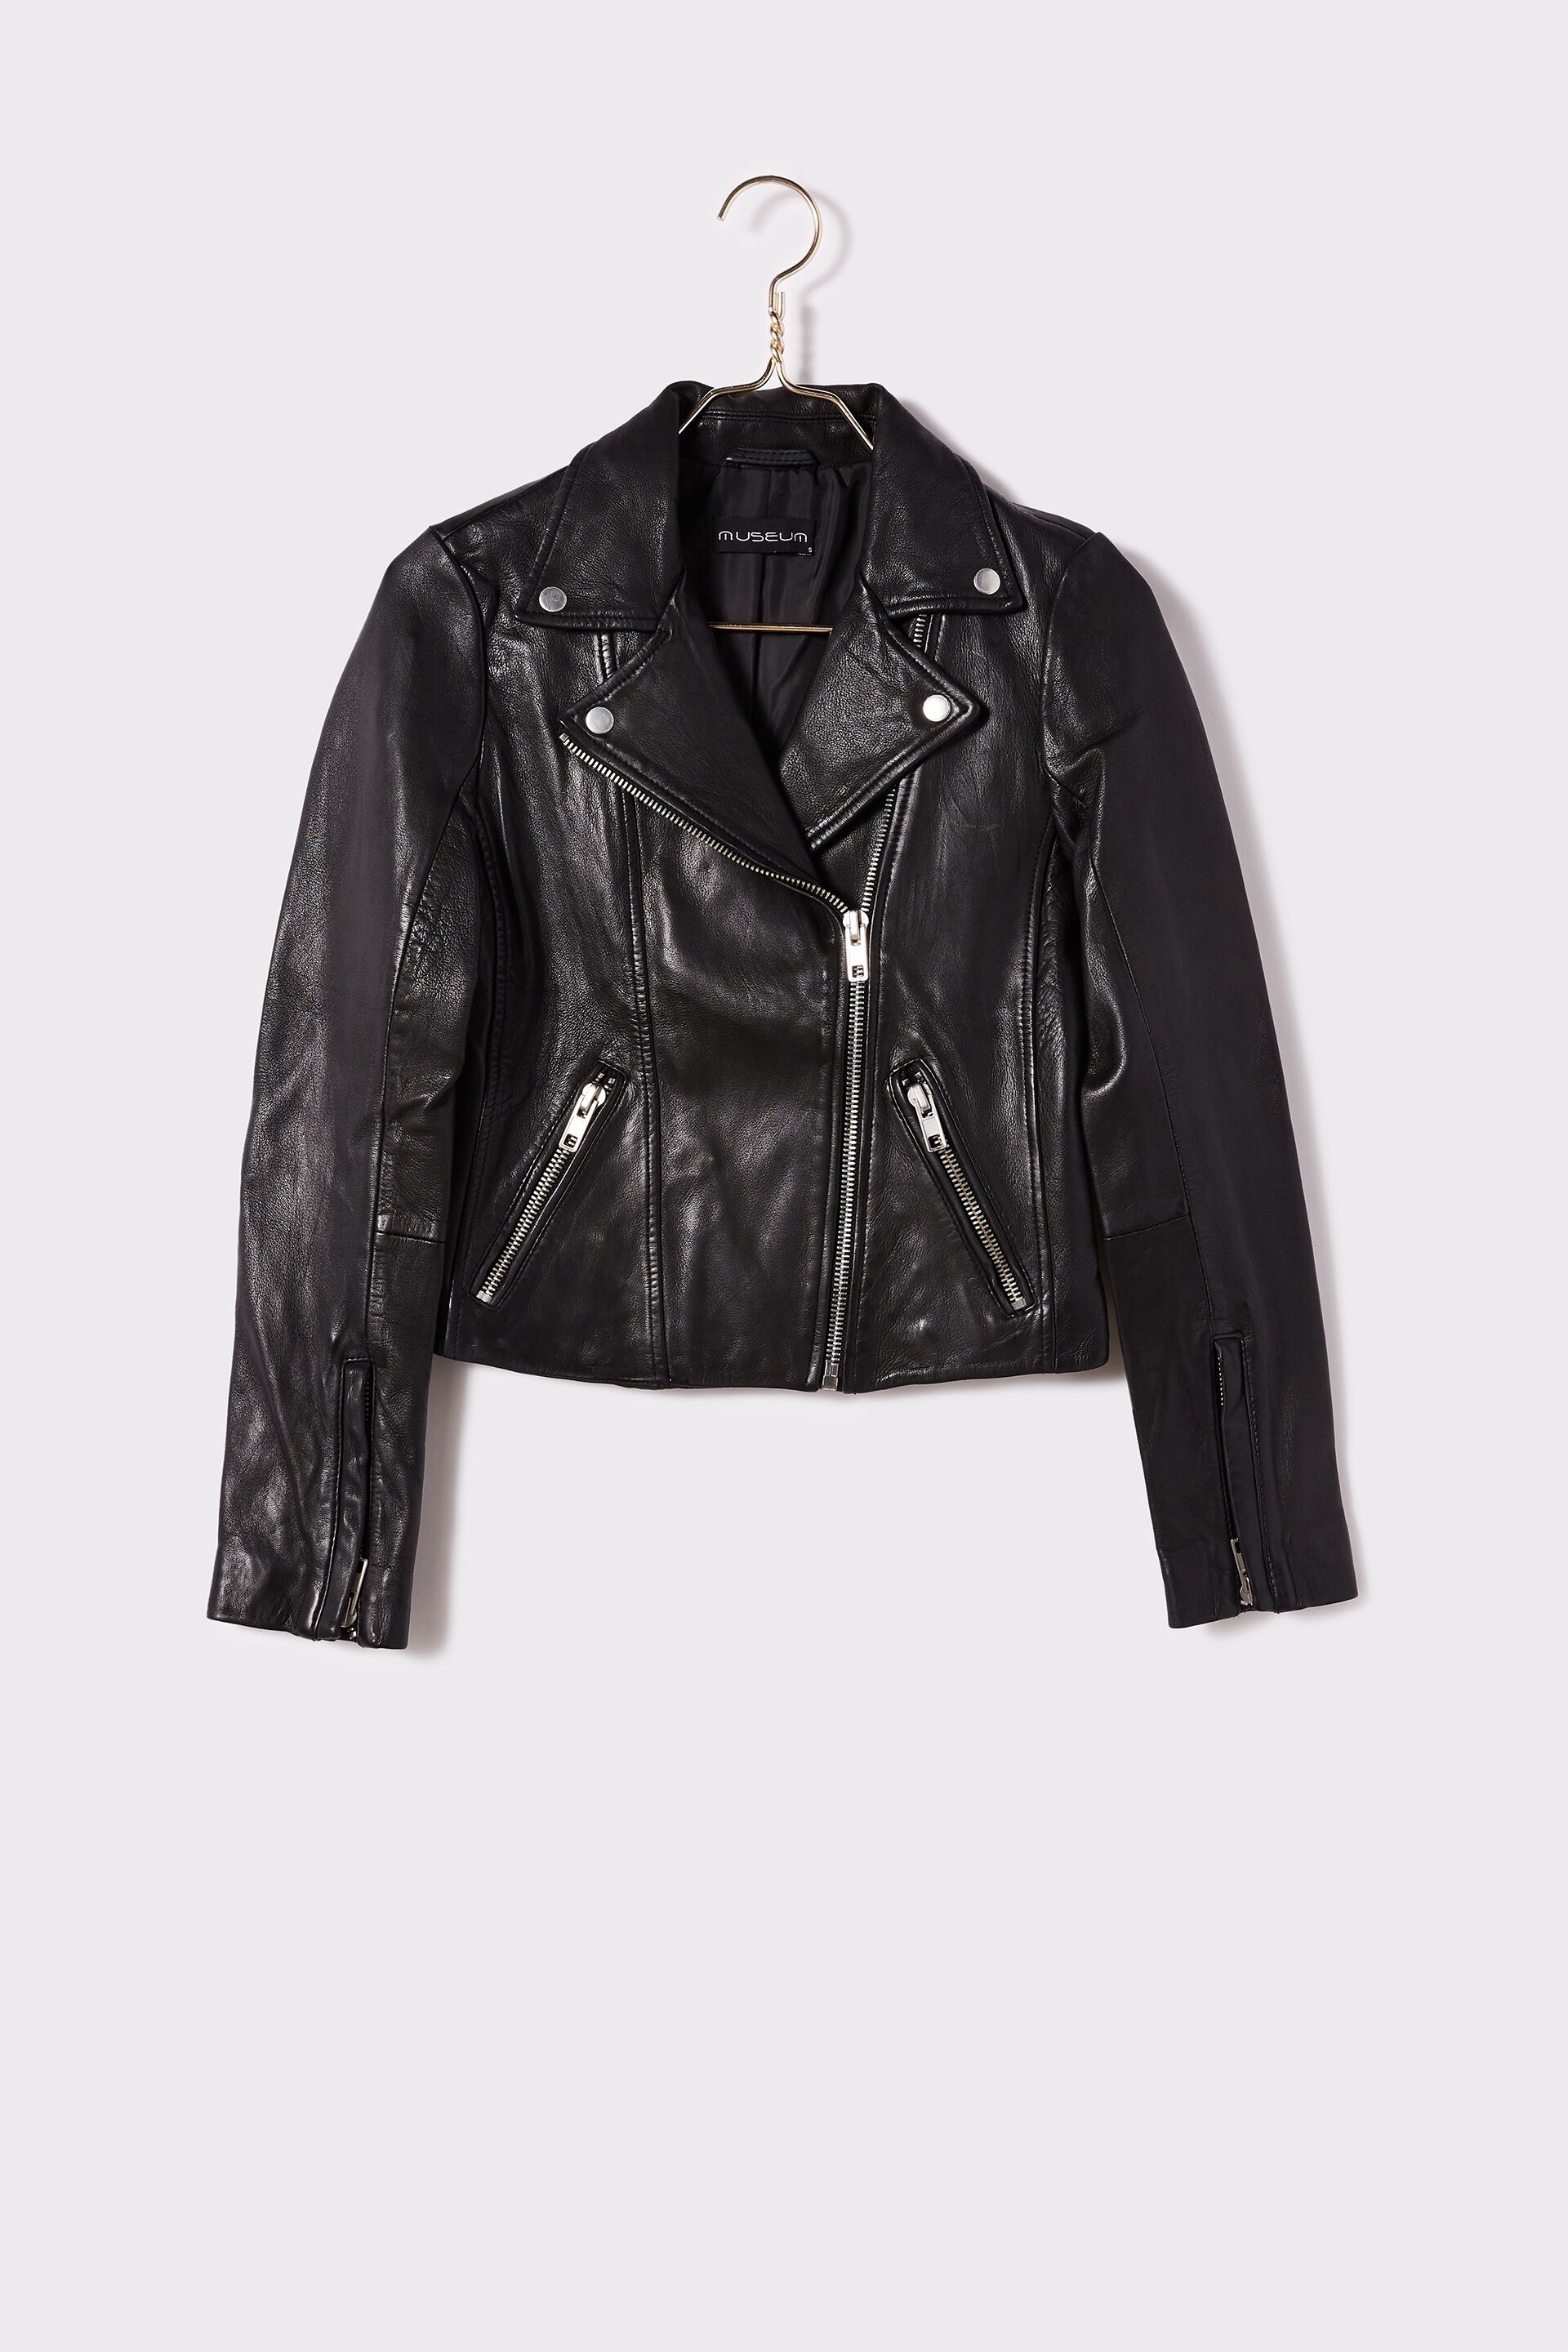 Museum Clothing Leather Austin Jacket